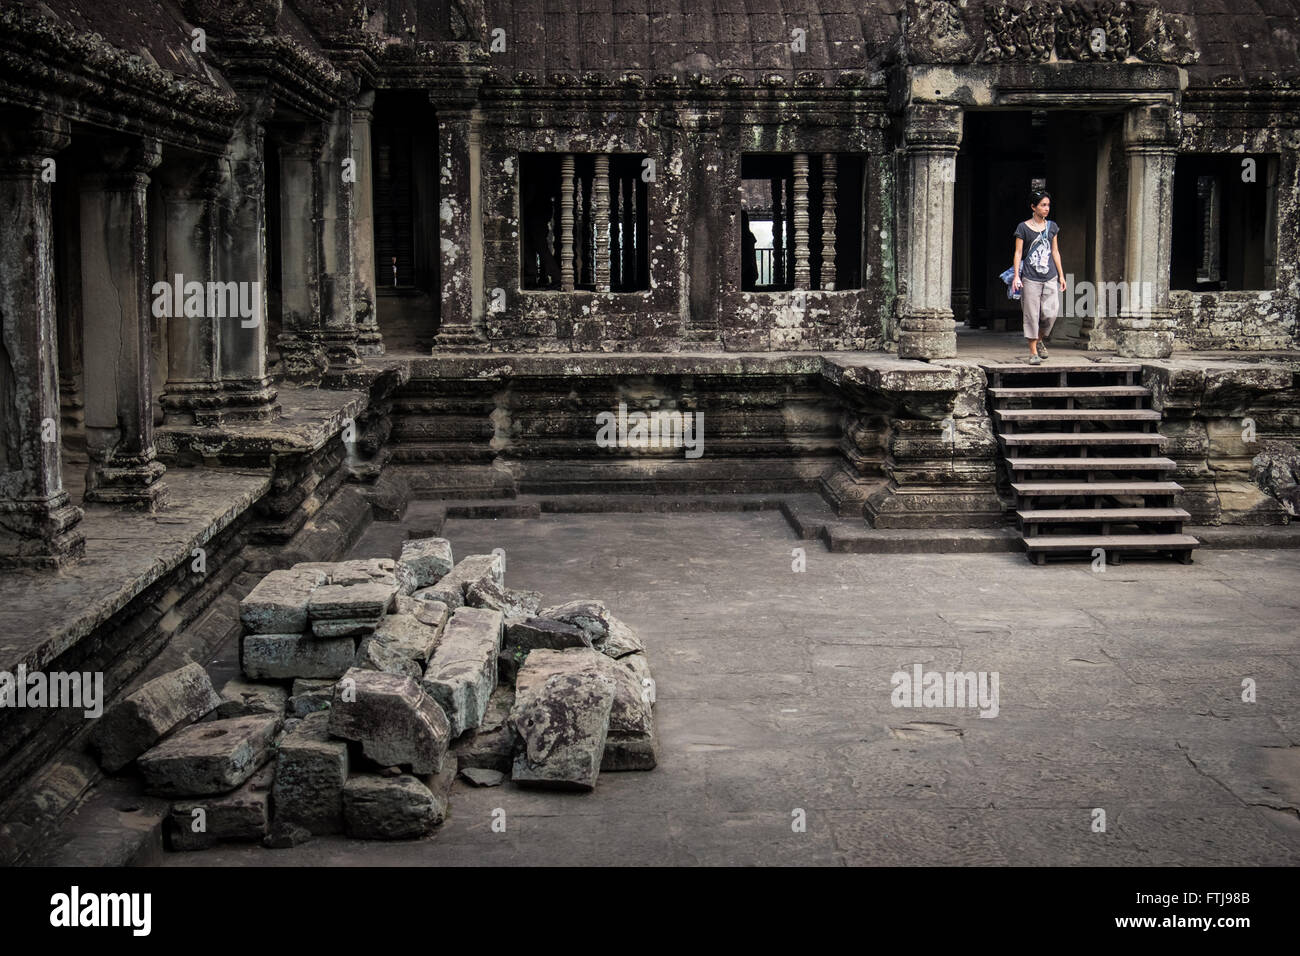 Una mujer caminando en el templo de Angkor Wat, en Camboya. Foto de stock